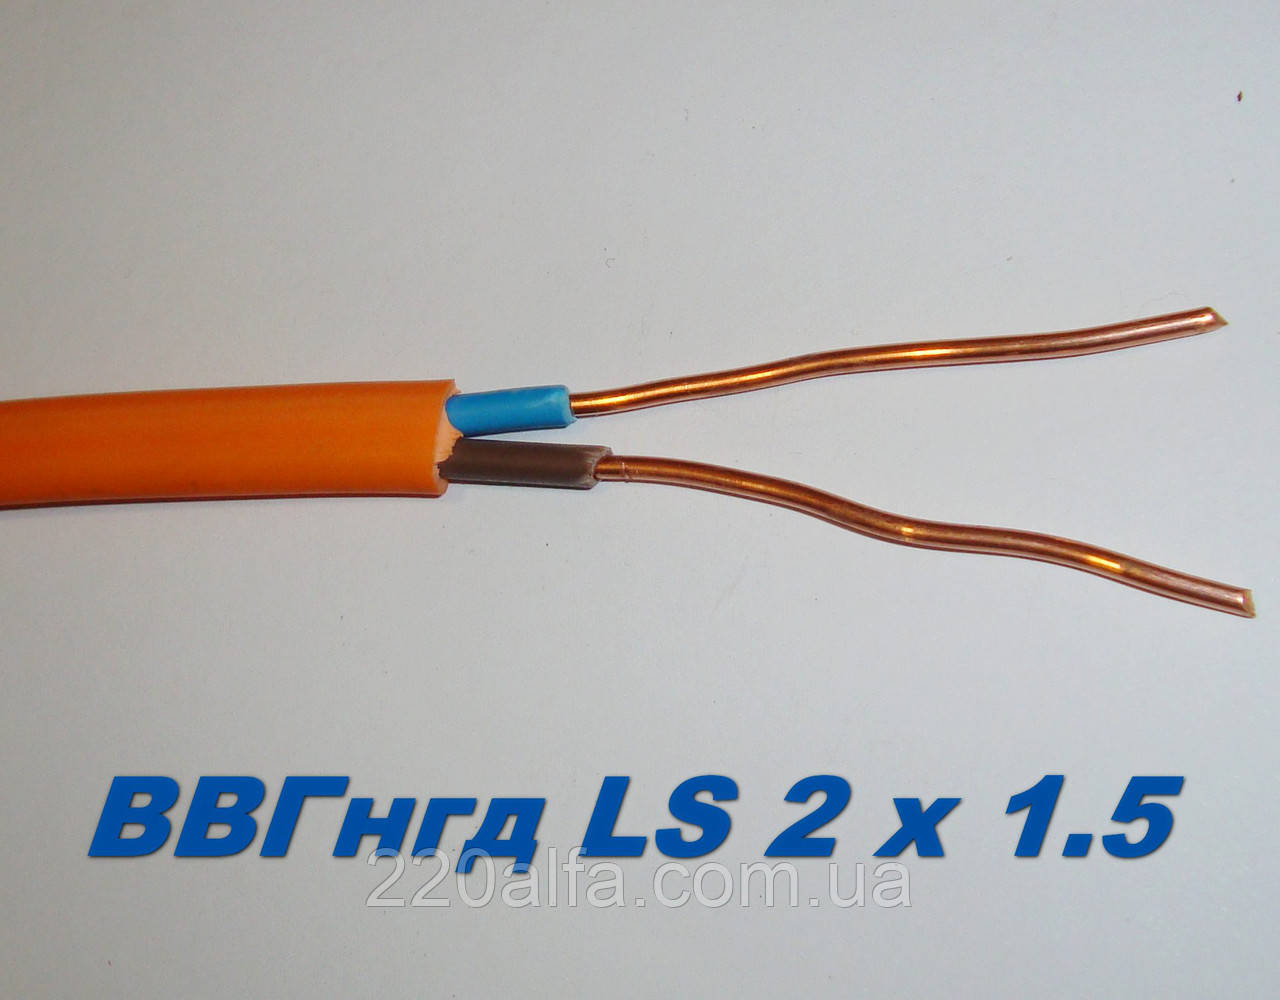 Силовий мідний кабель ВВГНГД 2х1.5 для надійної електропроводки, повноцінний переріз. Одеса Каблекс.